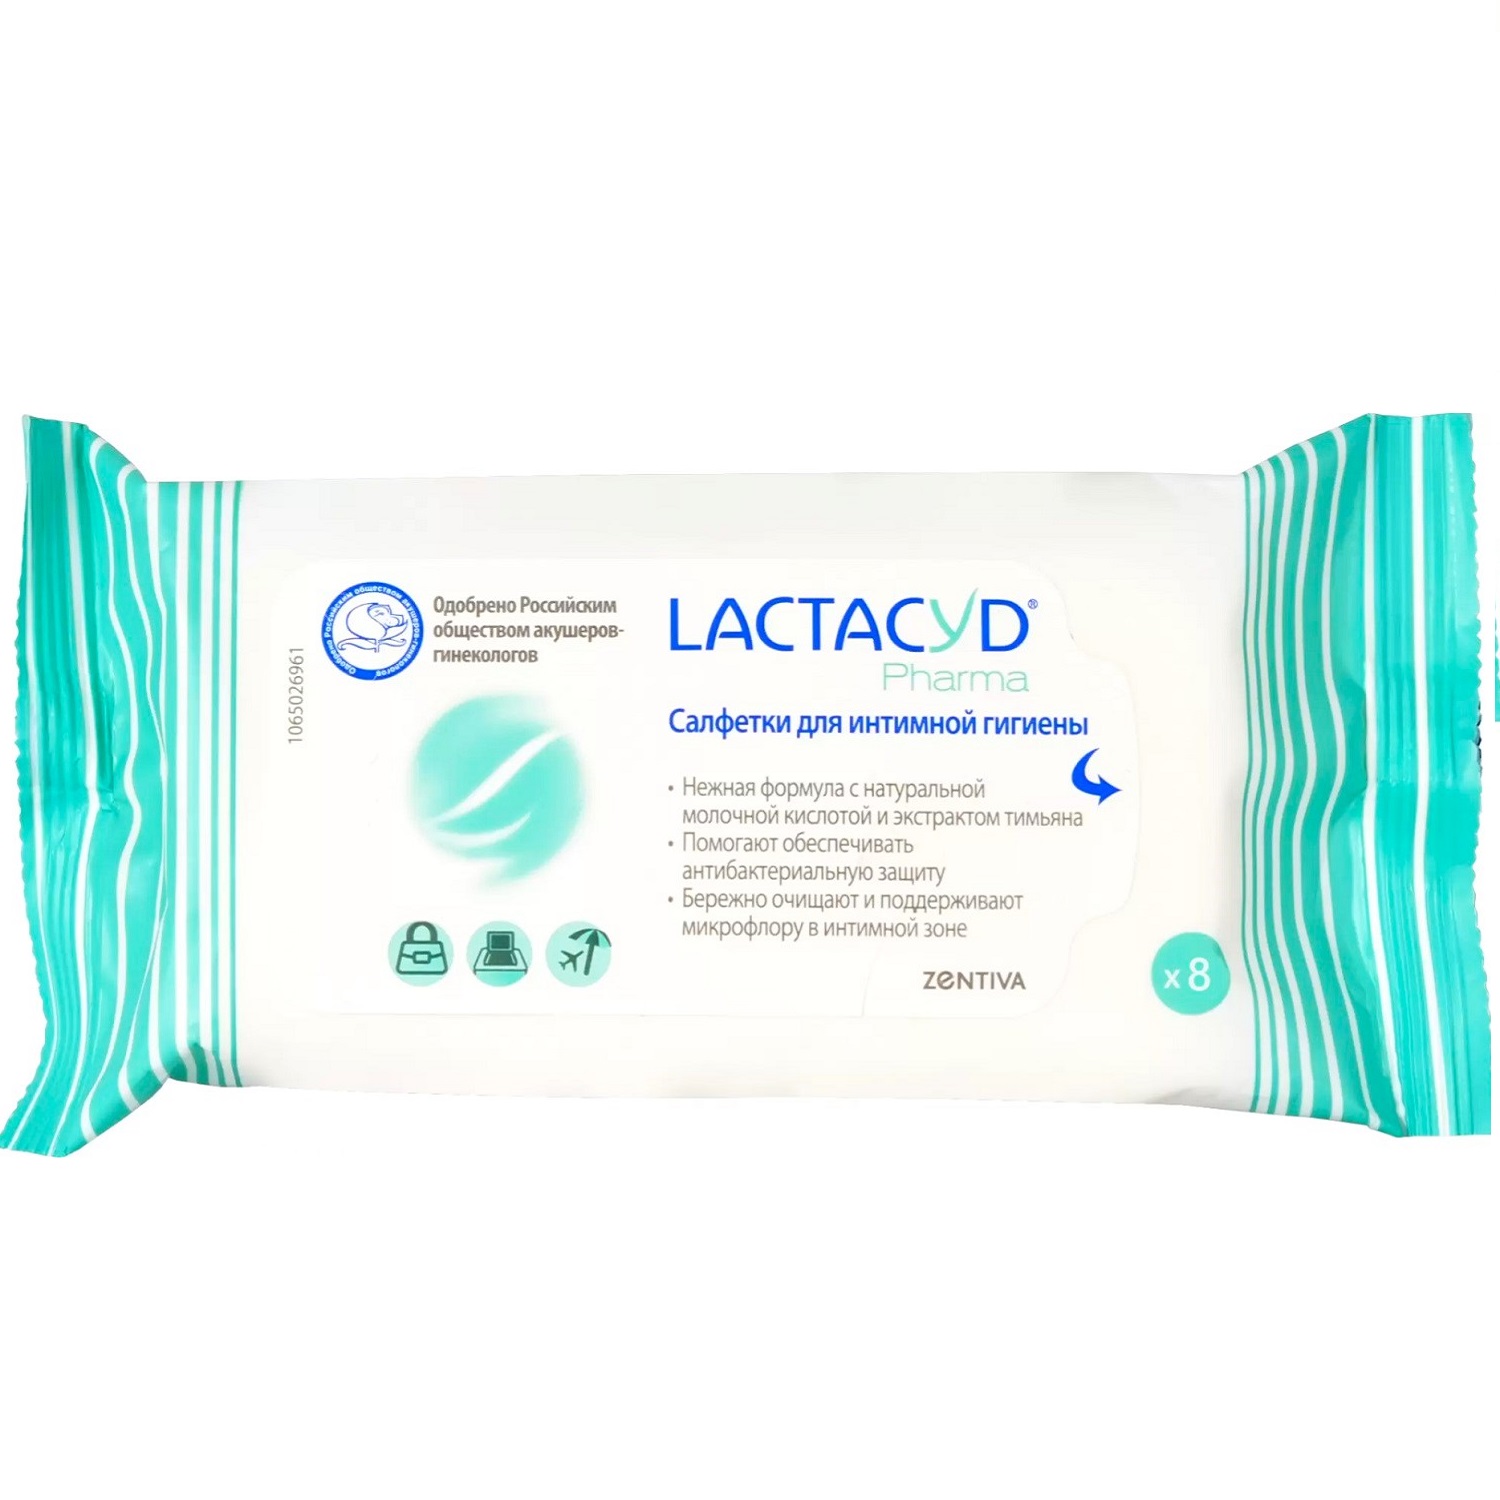 Lactacyd Салфетки с экстрактом тимьяна для интимной гигиены, 8 шт (Lactacyd, Lactacyd pharma)